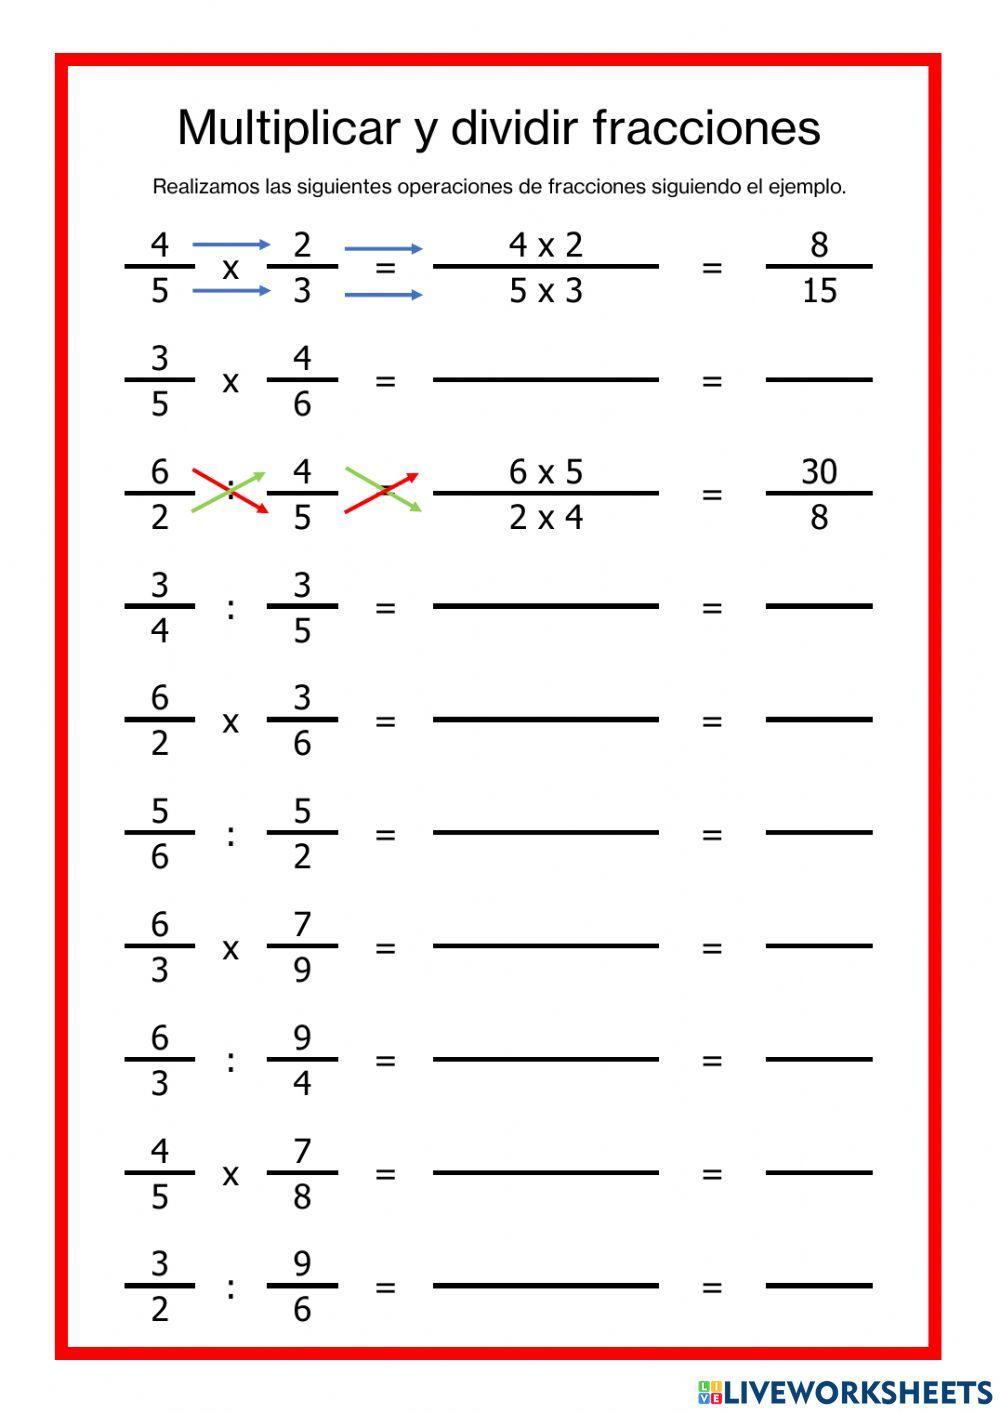 Multiplicar y dividir fracciones